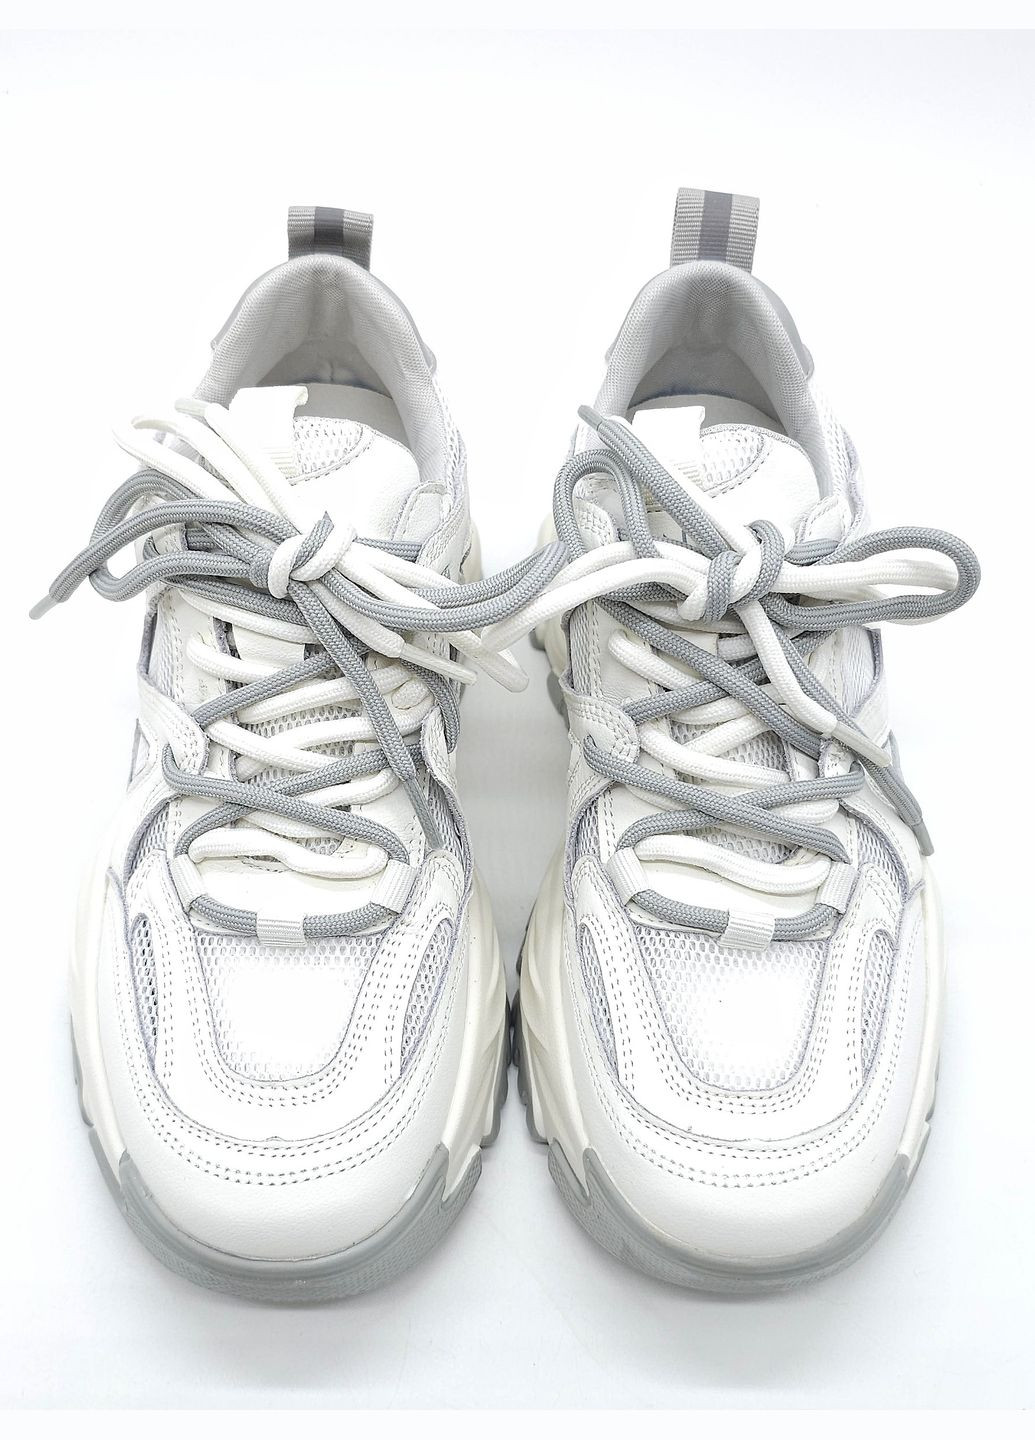 Білі всесезонні жіночі кросівки білі шкіряні l-10-44 25 см 40(р) Lonza